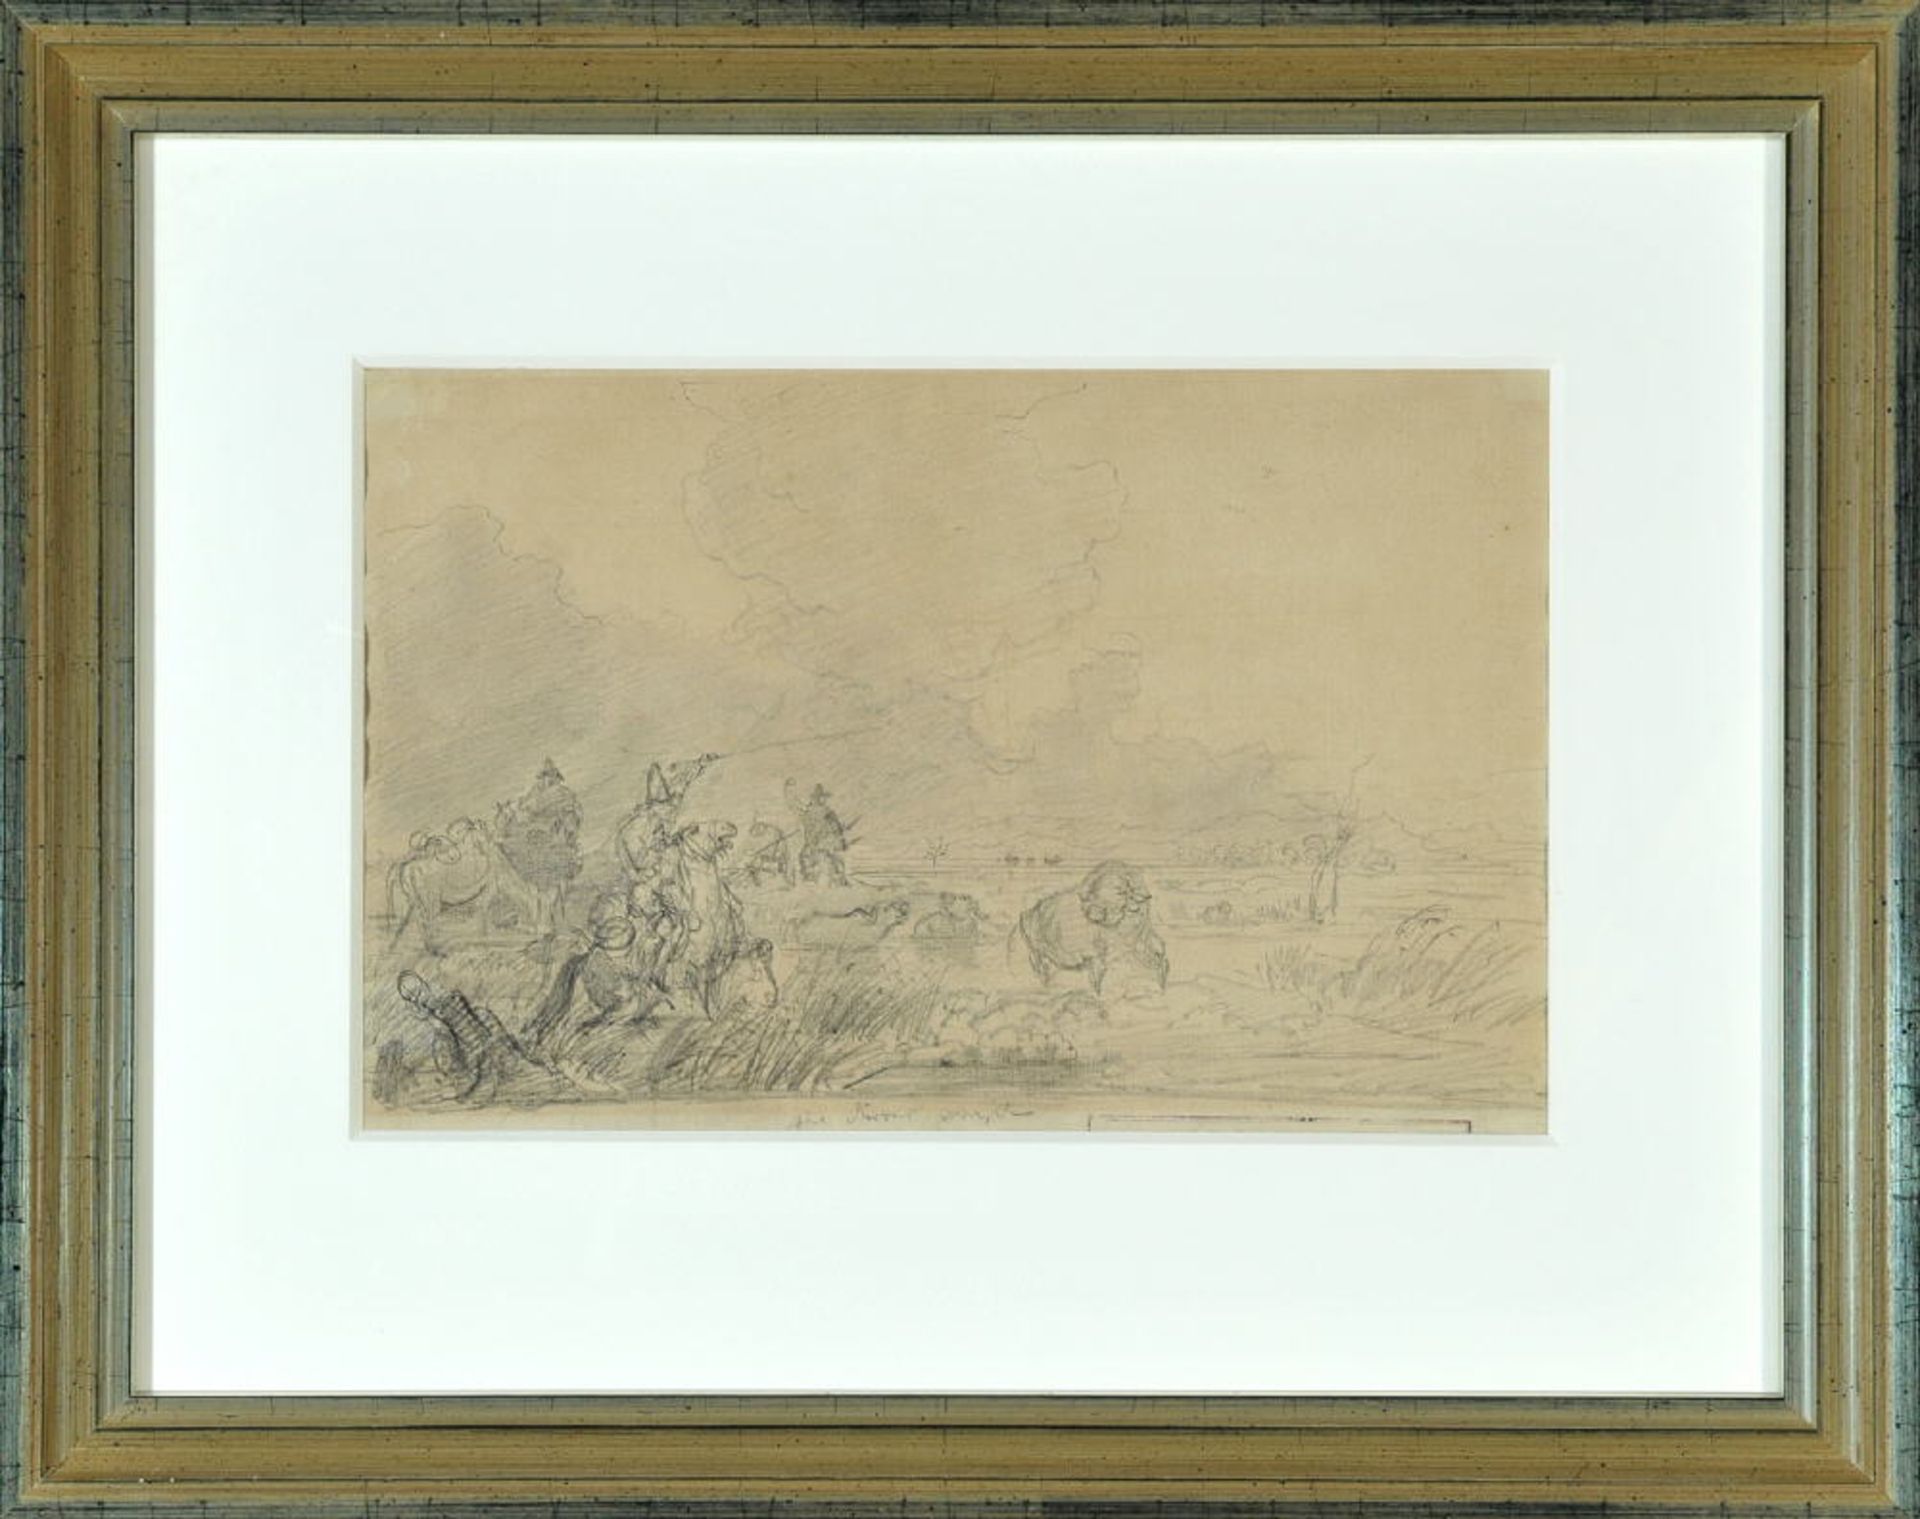 Bürkel, Heinrich, 1802 Pirmasens - 1869 MünchenBleistiftzeichnung, 21 x 32 cm, " Landschaft mit